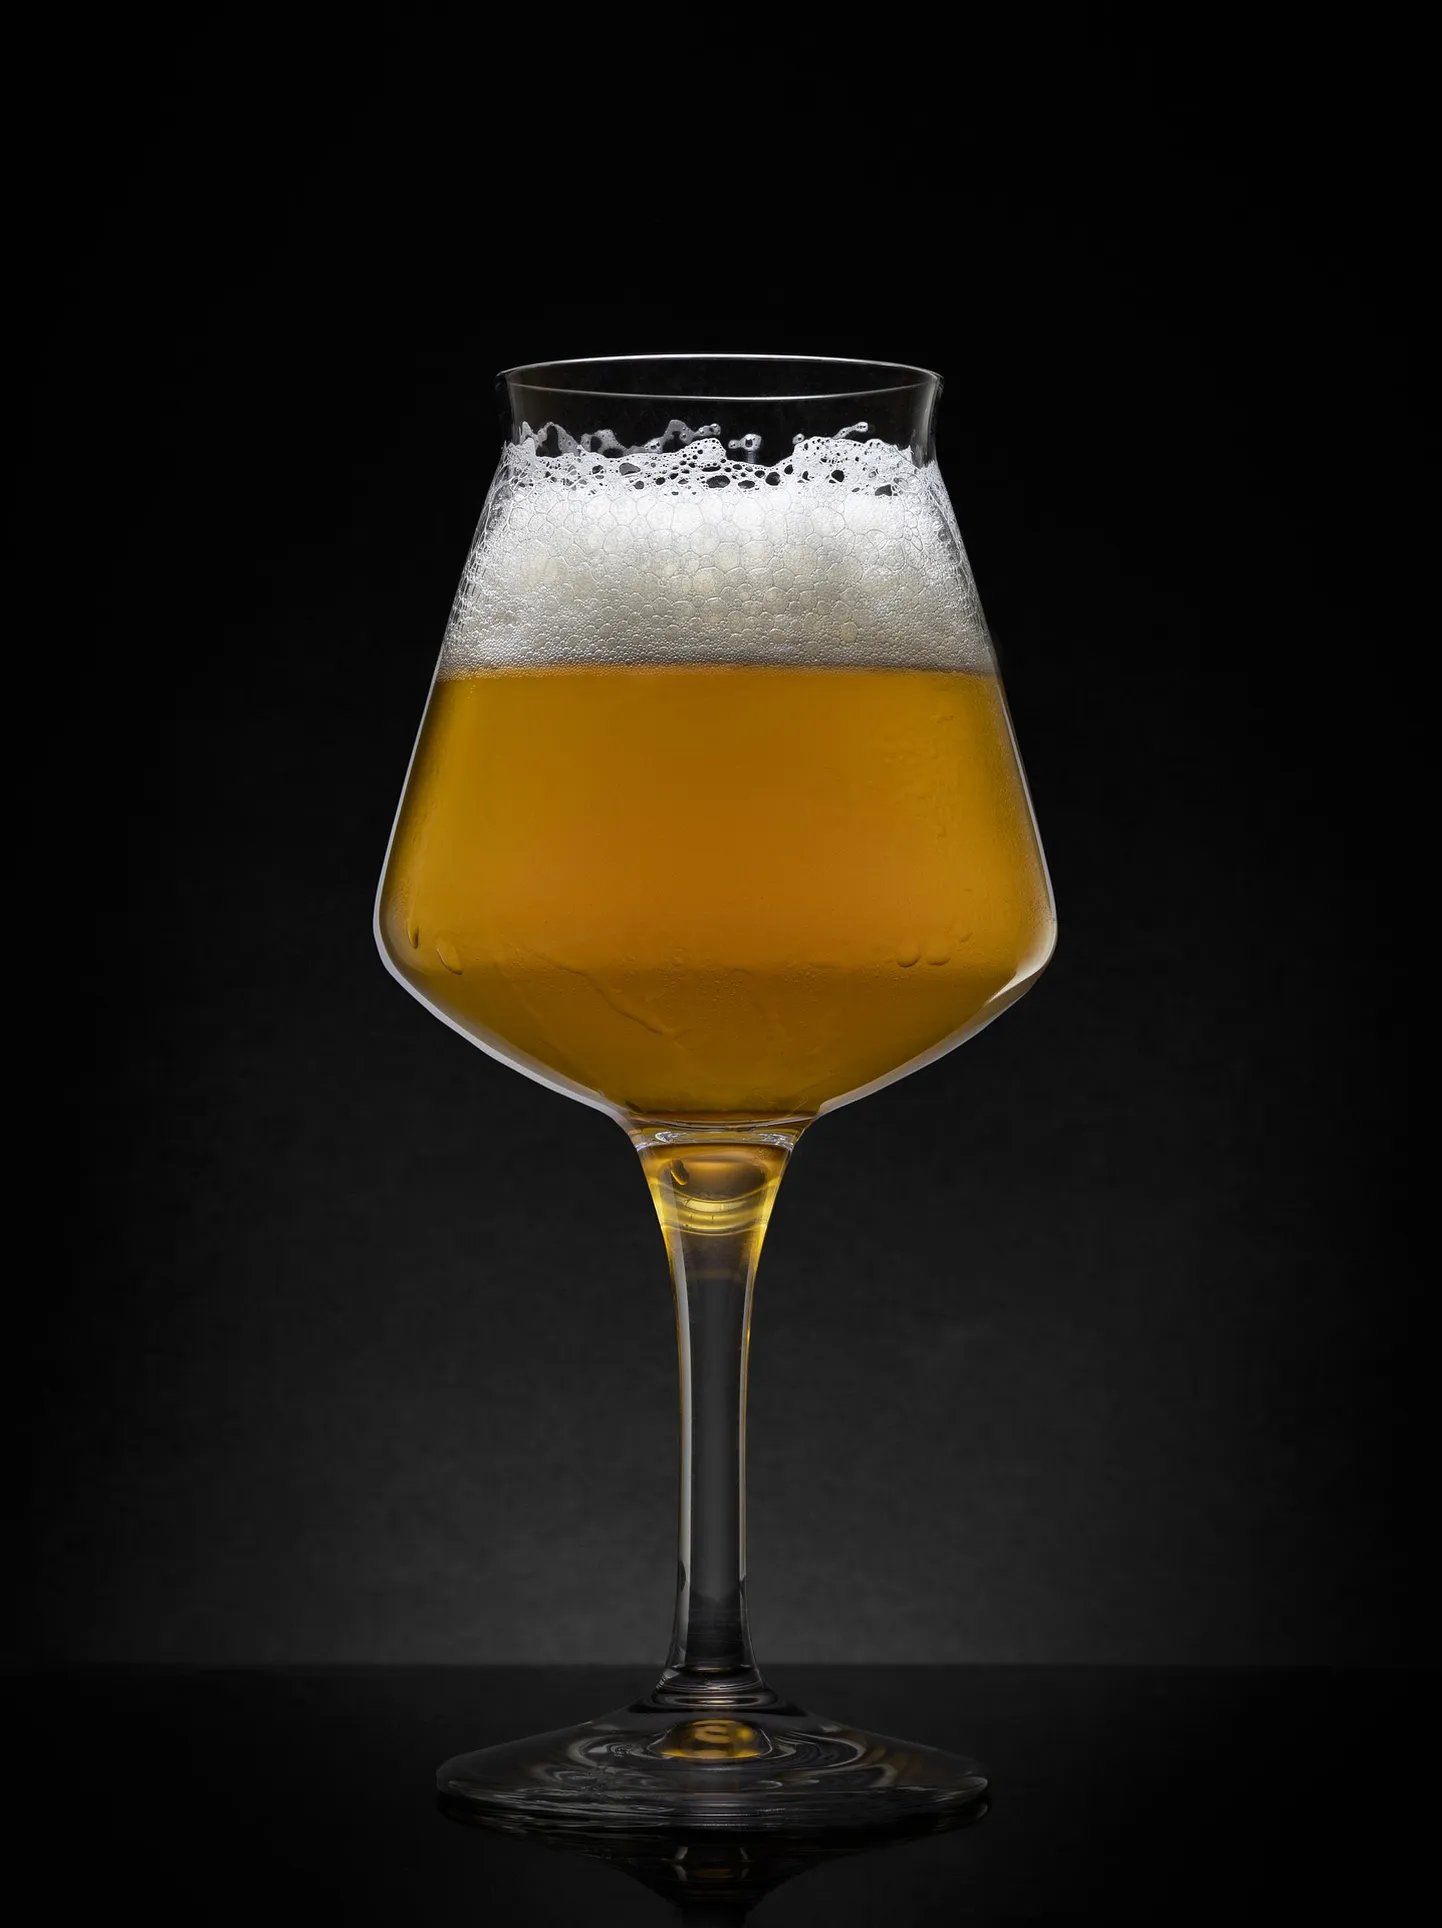 Светлое пиво в бокале (иллюстративное фото).